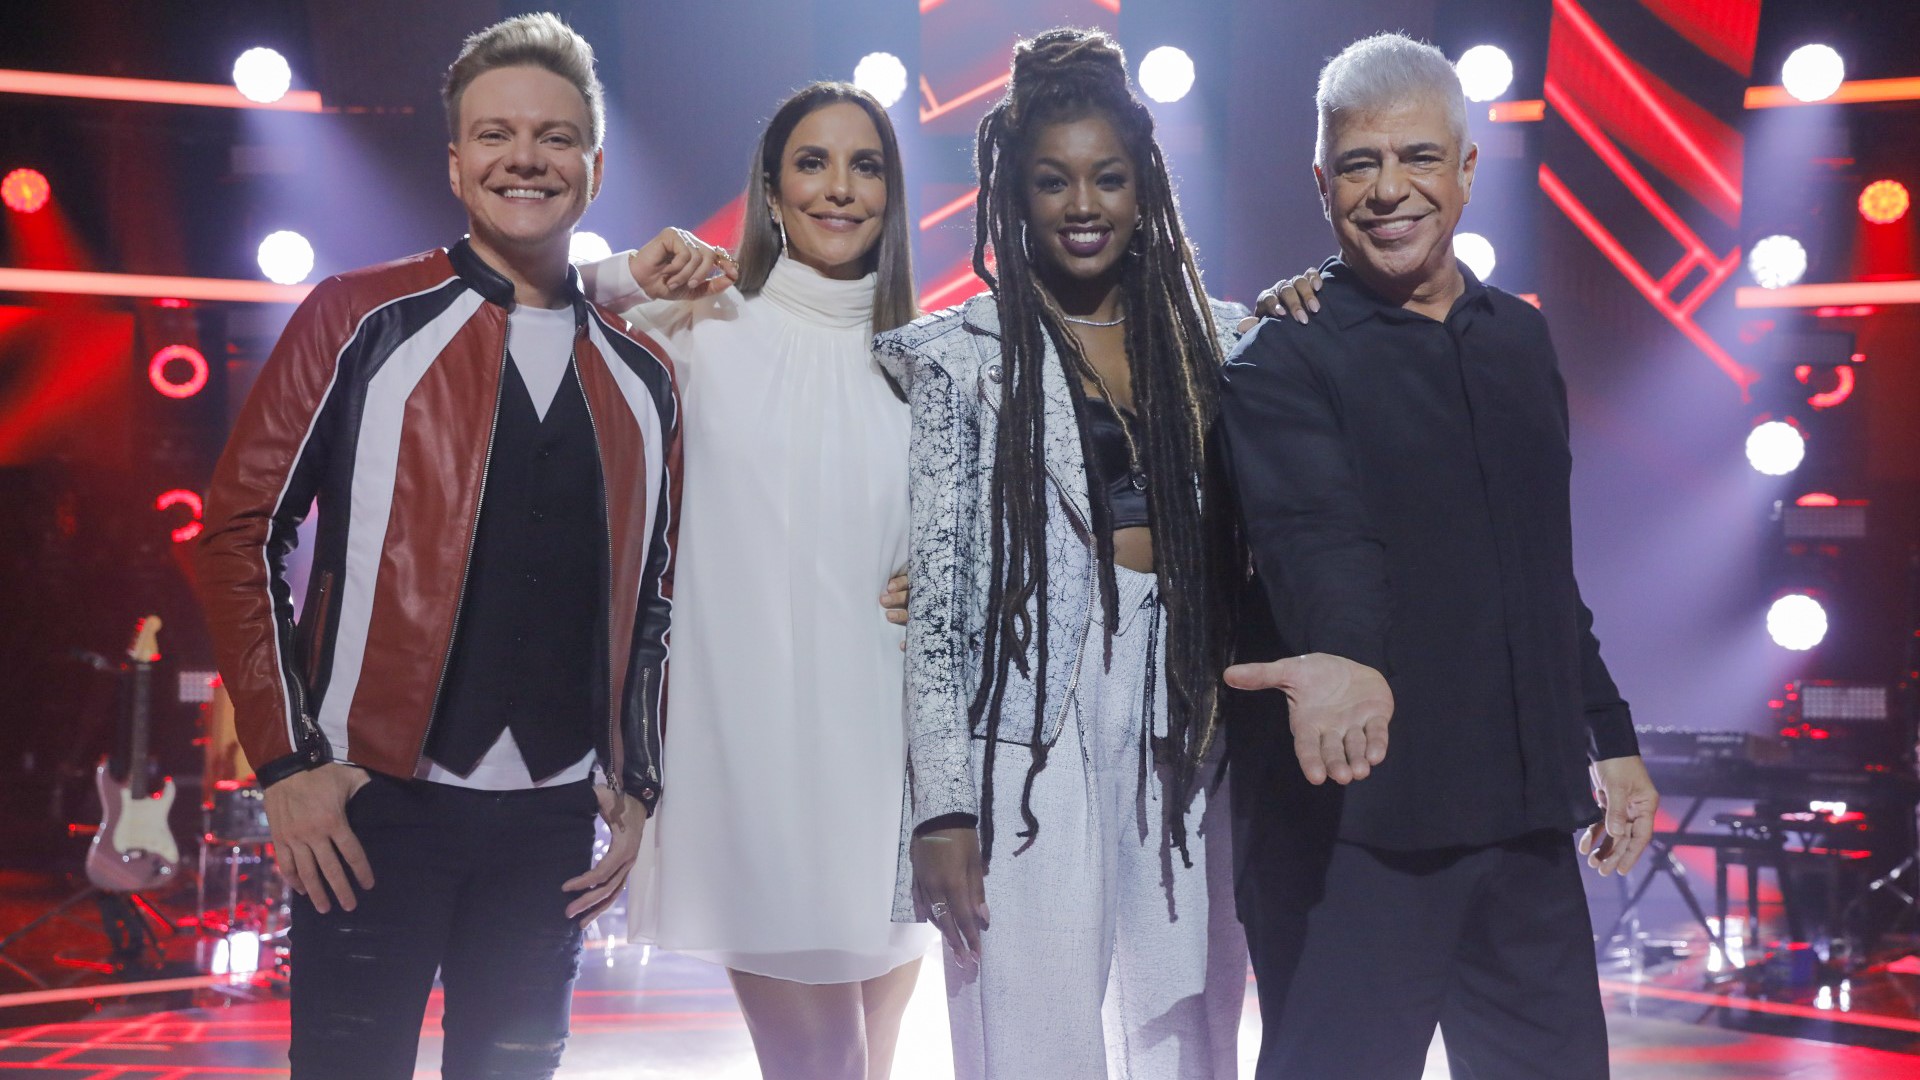 Globo toma decisão sobre oitava temporada do The Voice Brasil